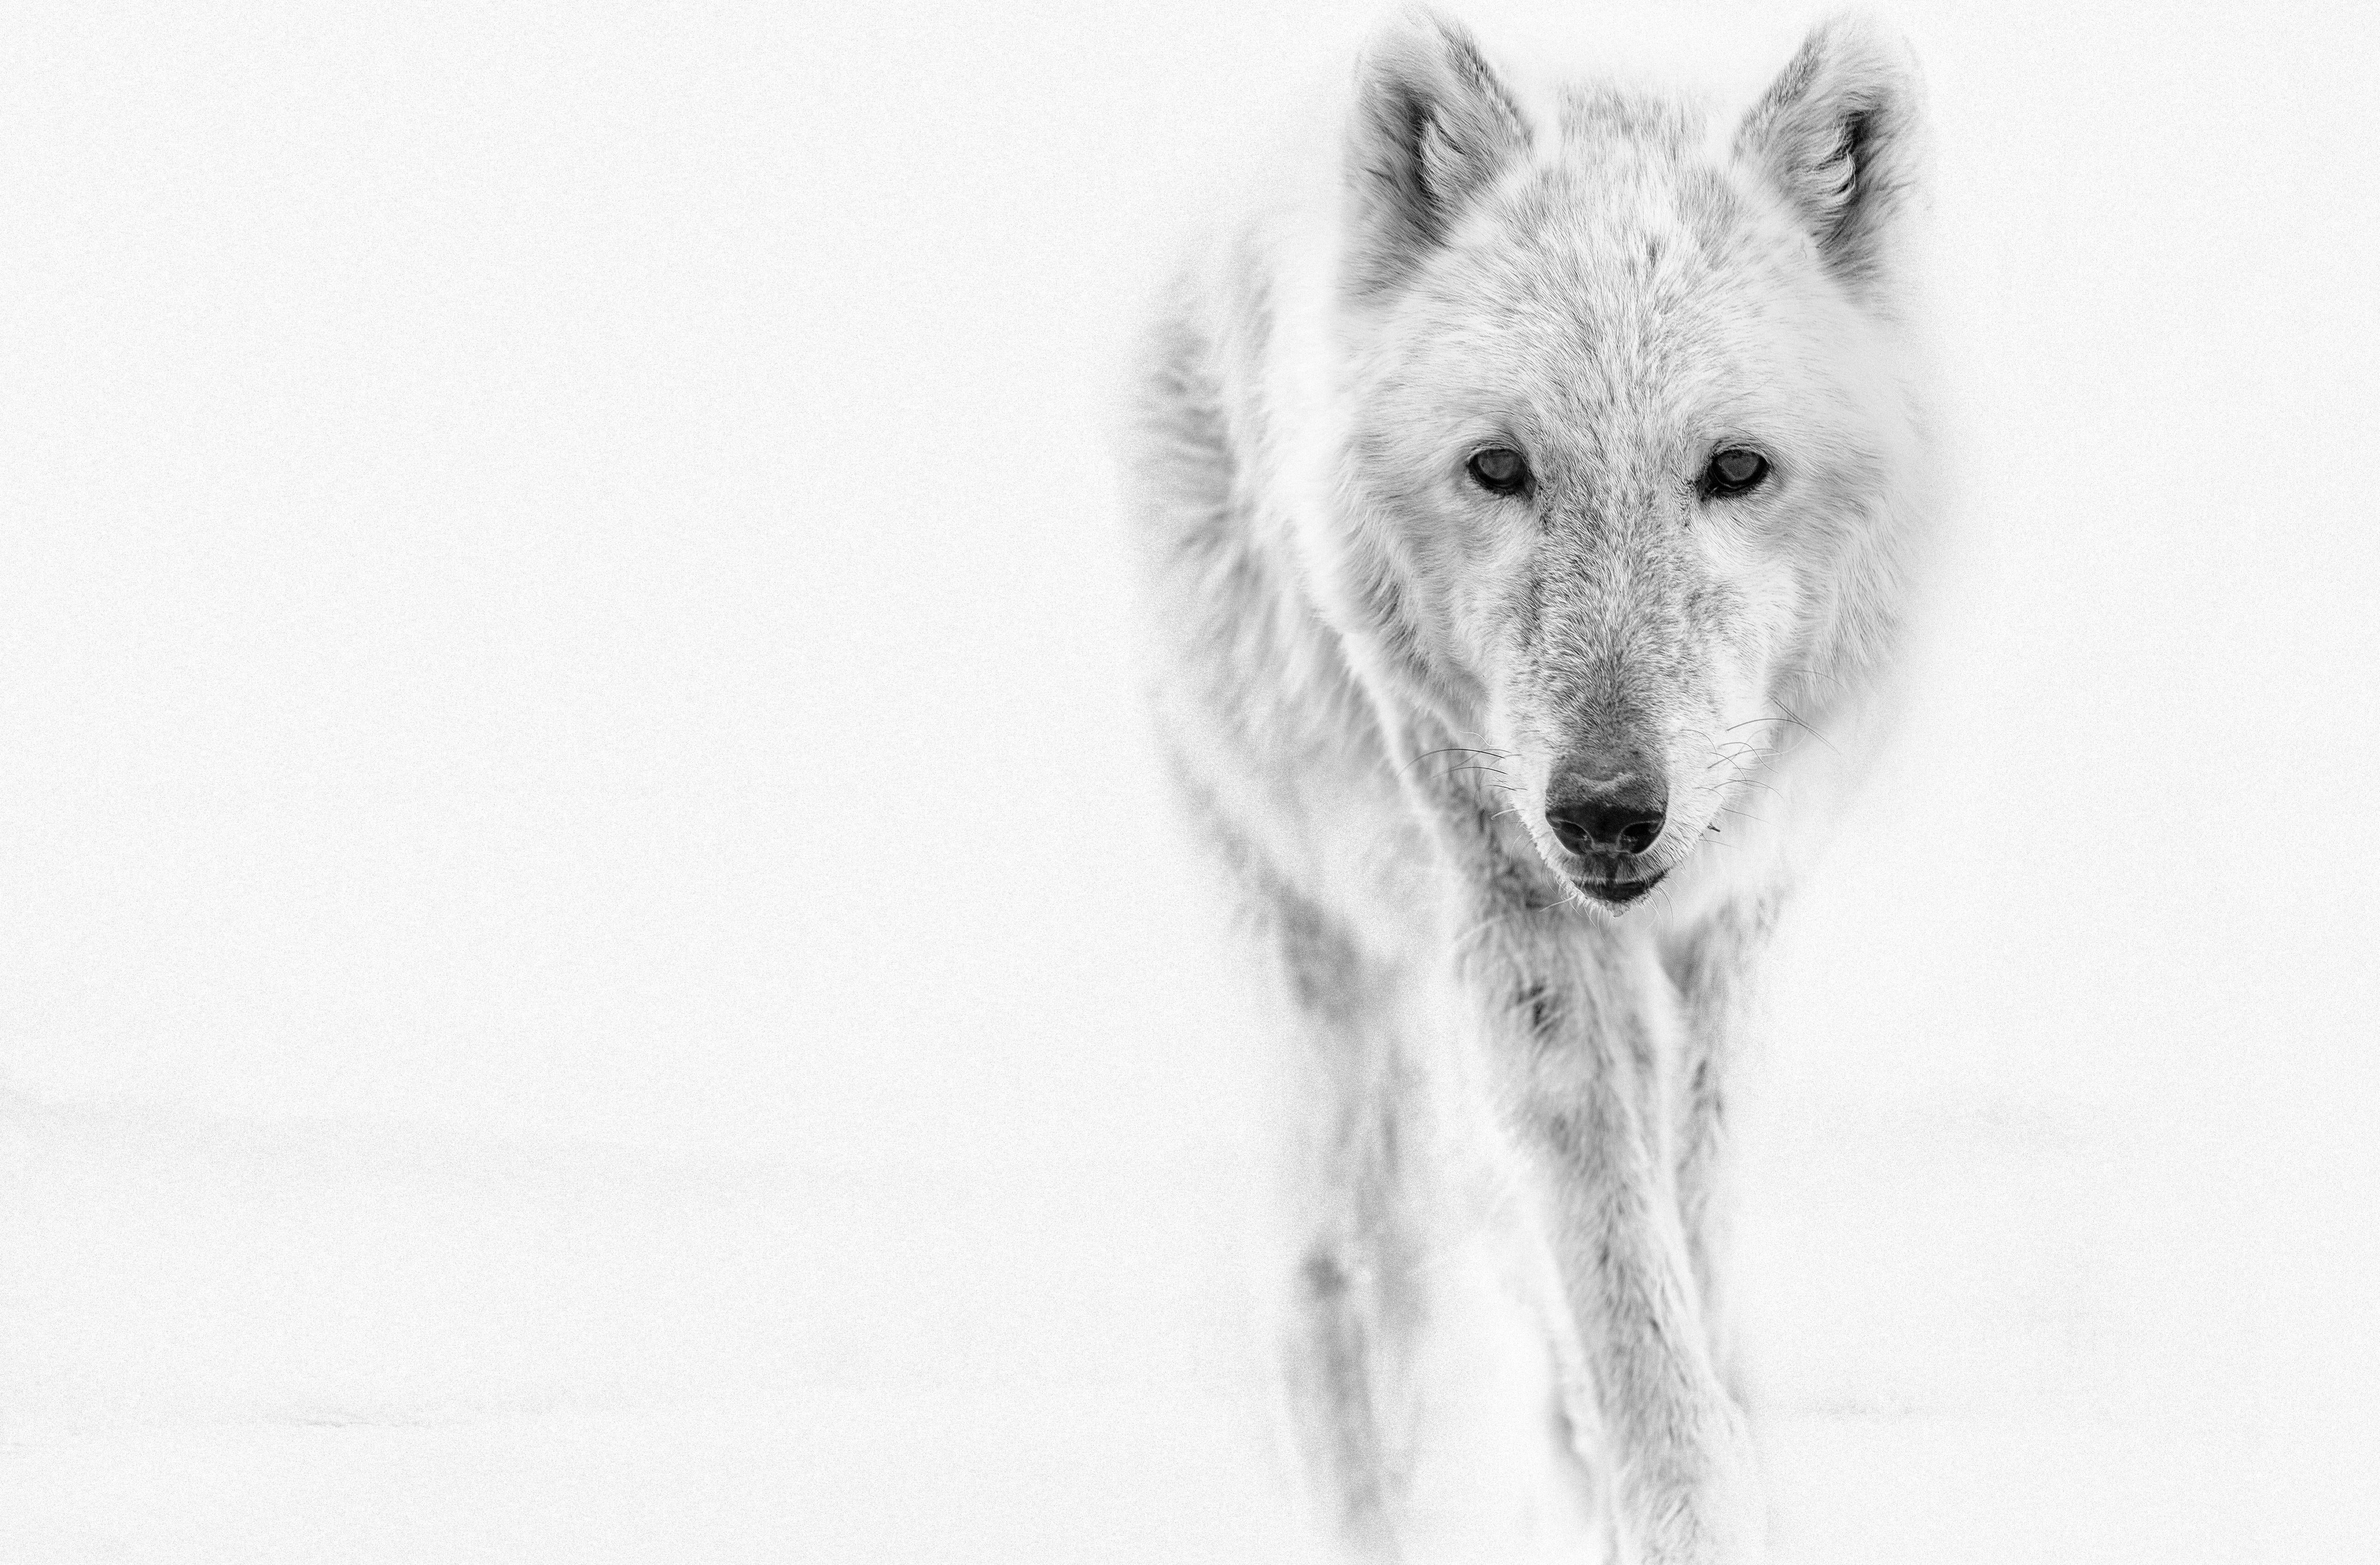 Black and White Photograph Shane Russeck - "Le loup arctique" 28 x 40  Photographie noir et blanc, Photographie d'art Wolves